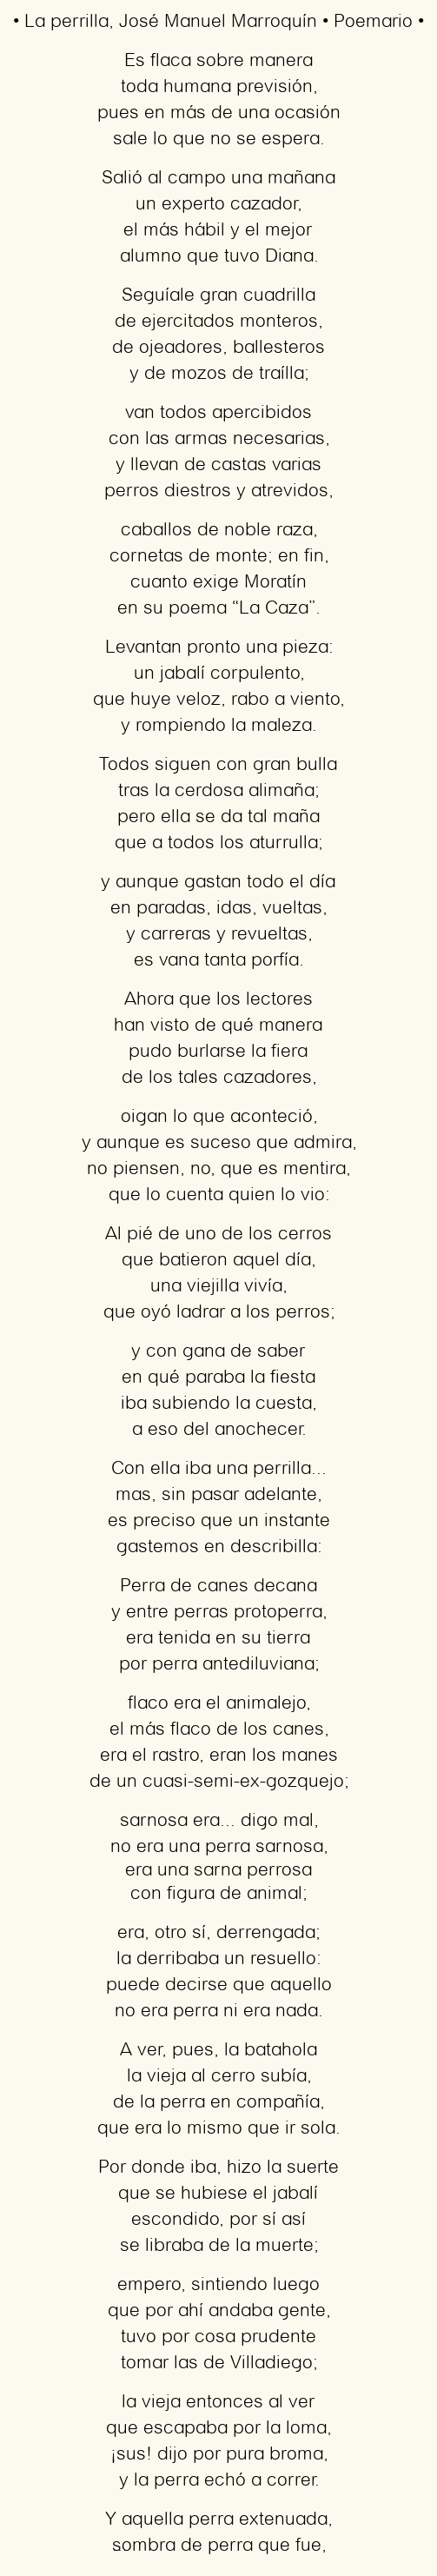 Imagen con el poema La perrilla, por José Manuel Marroquín